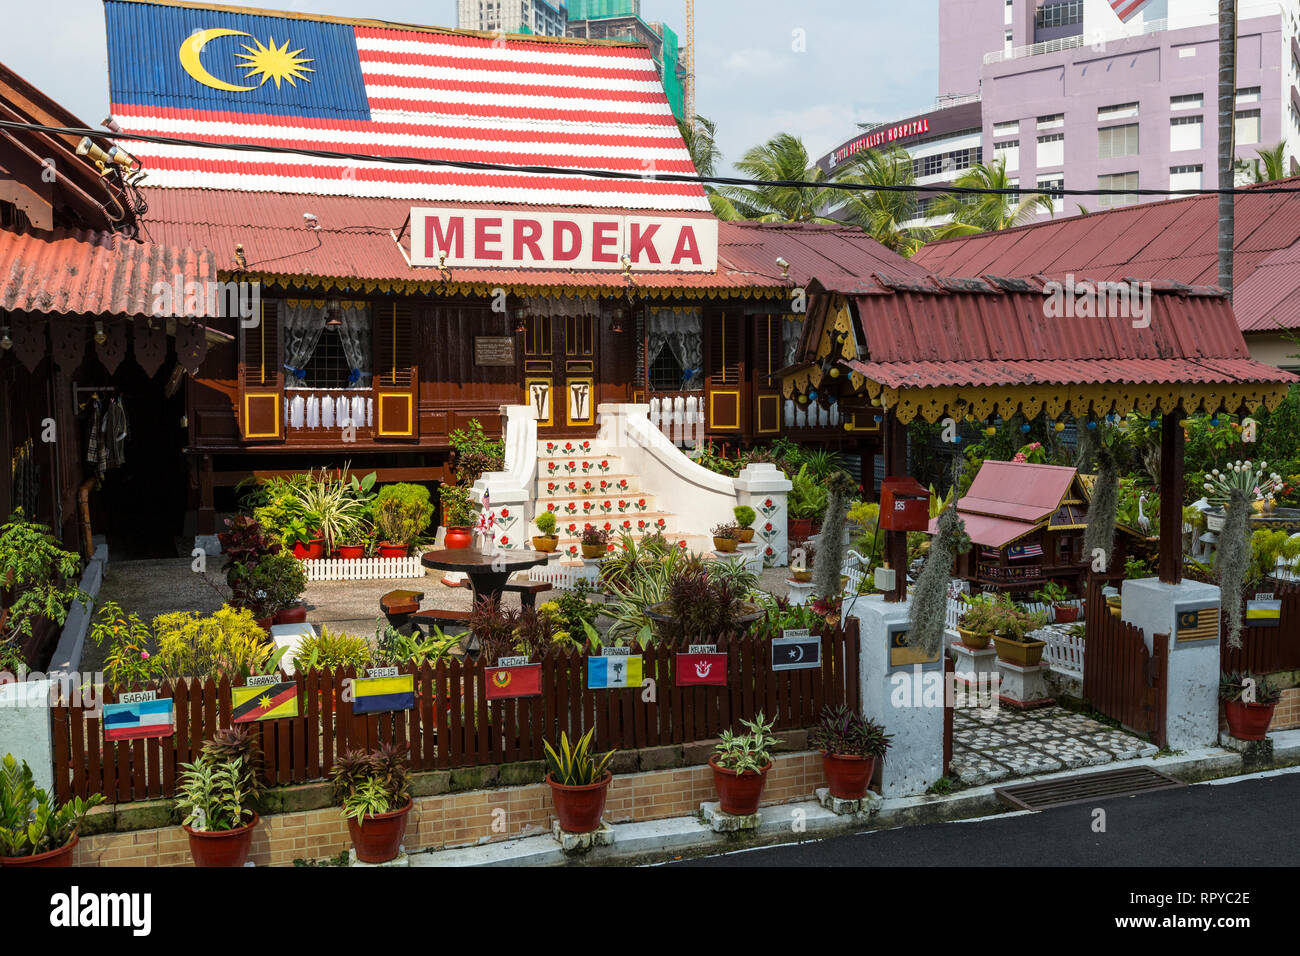 Kampung Morten Haus mit Fahnen, die traditionellen malaysischen Sultanate, Melaka, Malaysia. Stockfoto